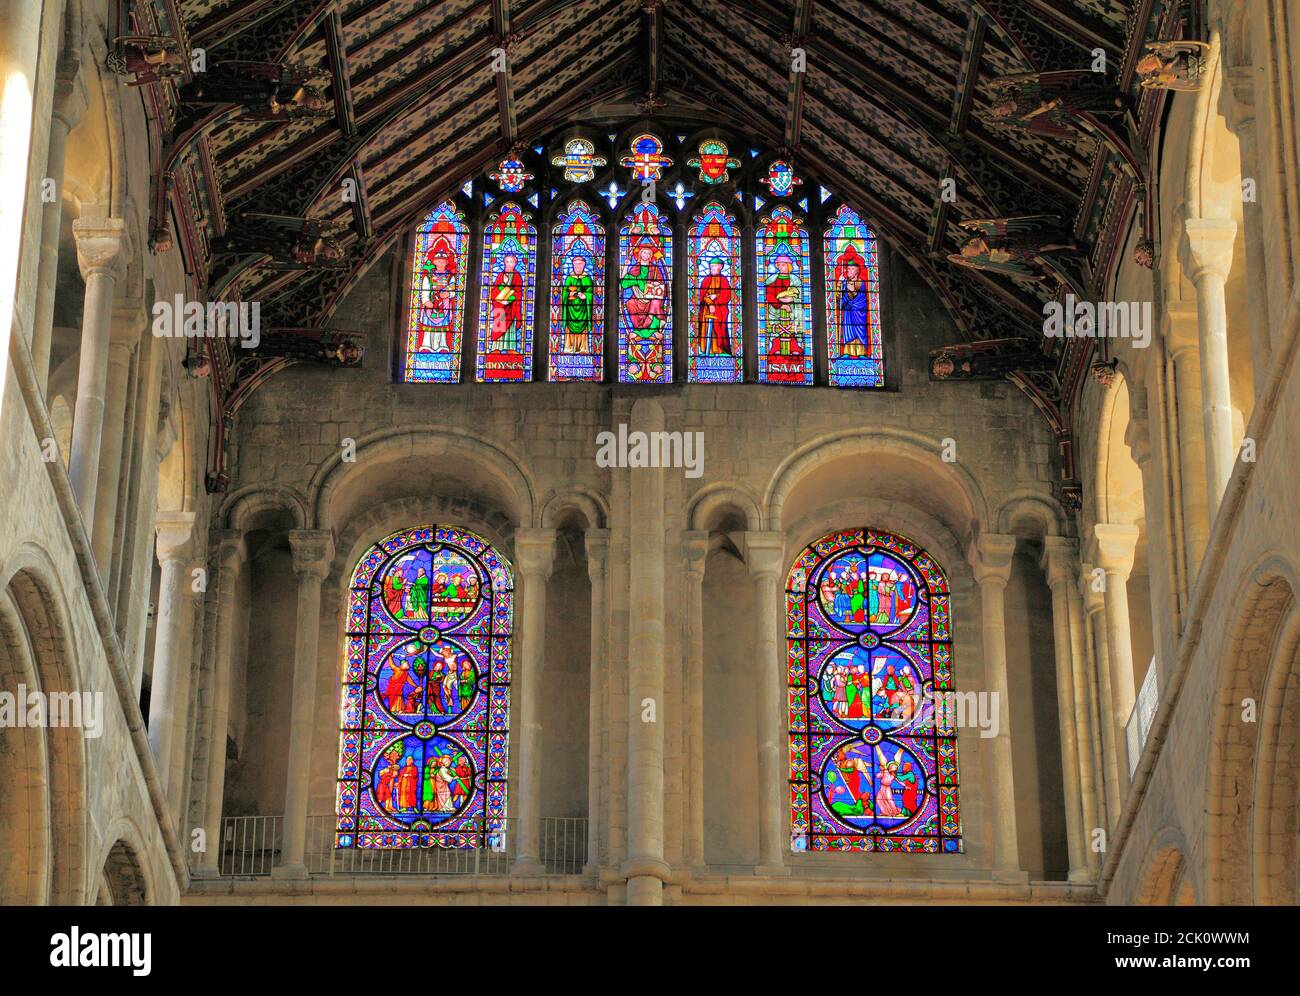 Cathédrale d'Ely, intérieur, transept sud, arches normandes en contrebas, arches anglaises en haut, vitraux victoriens, fenêtres, Cambridgeshire, Angleterre Banque D'Images